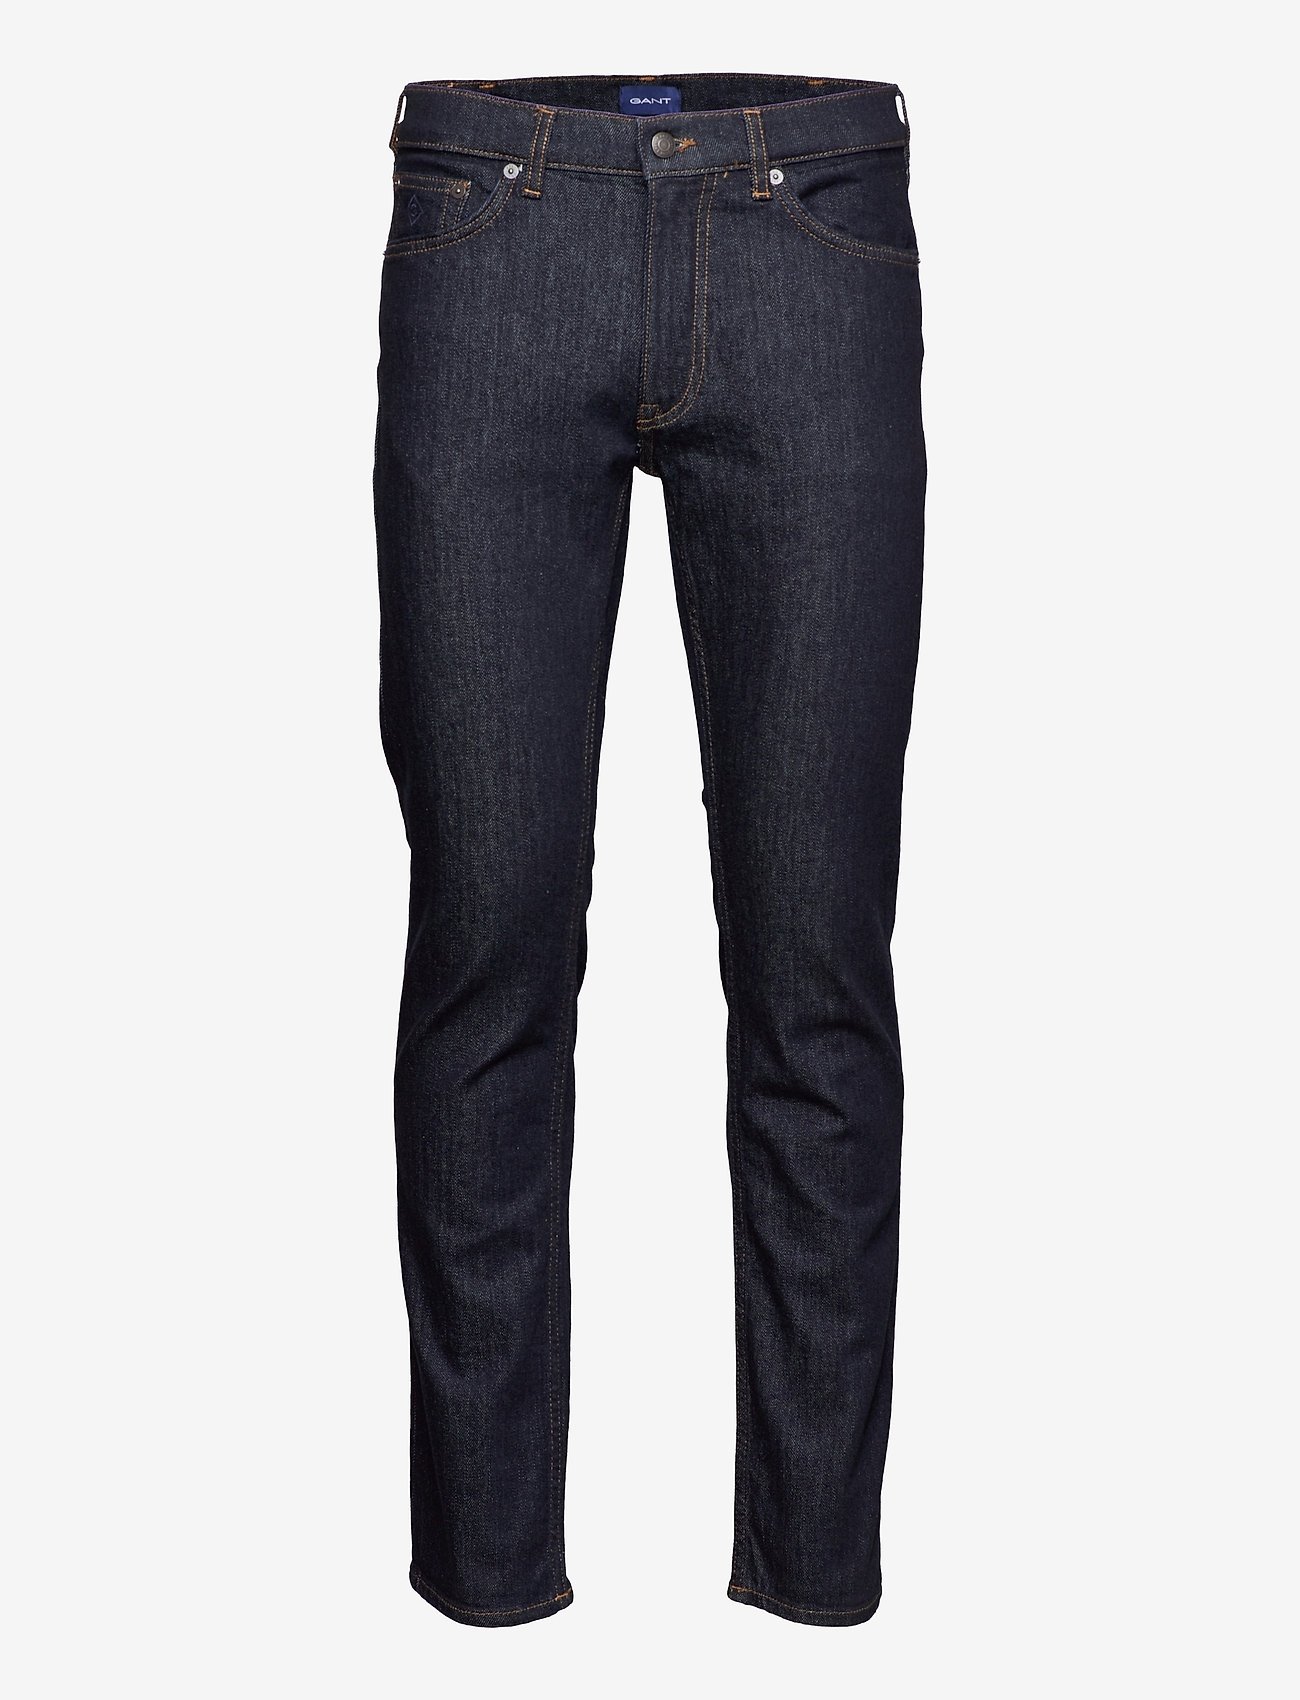 GANT - ARLEY GANT JEANS - regular jeans - dark blue - 0